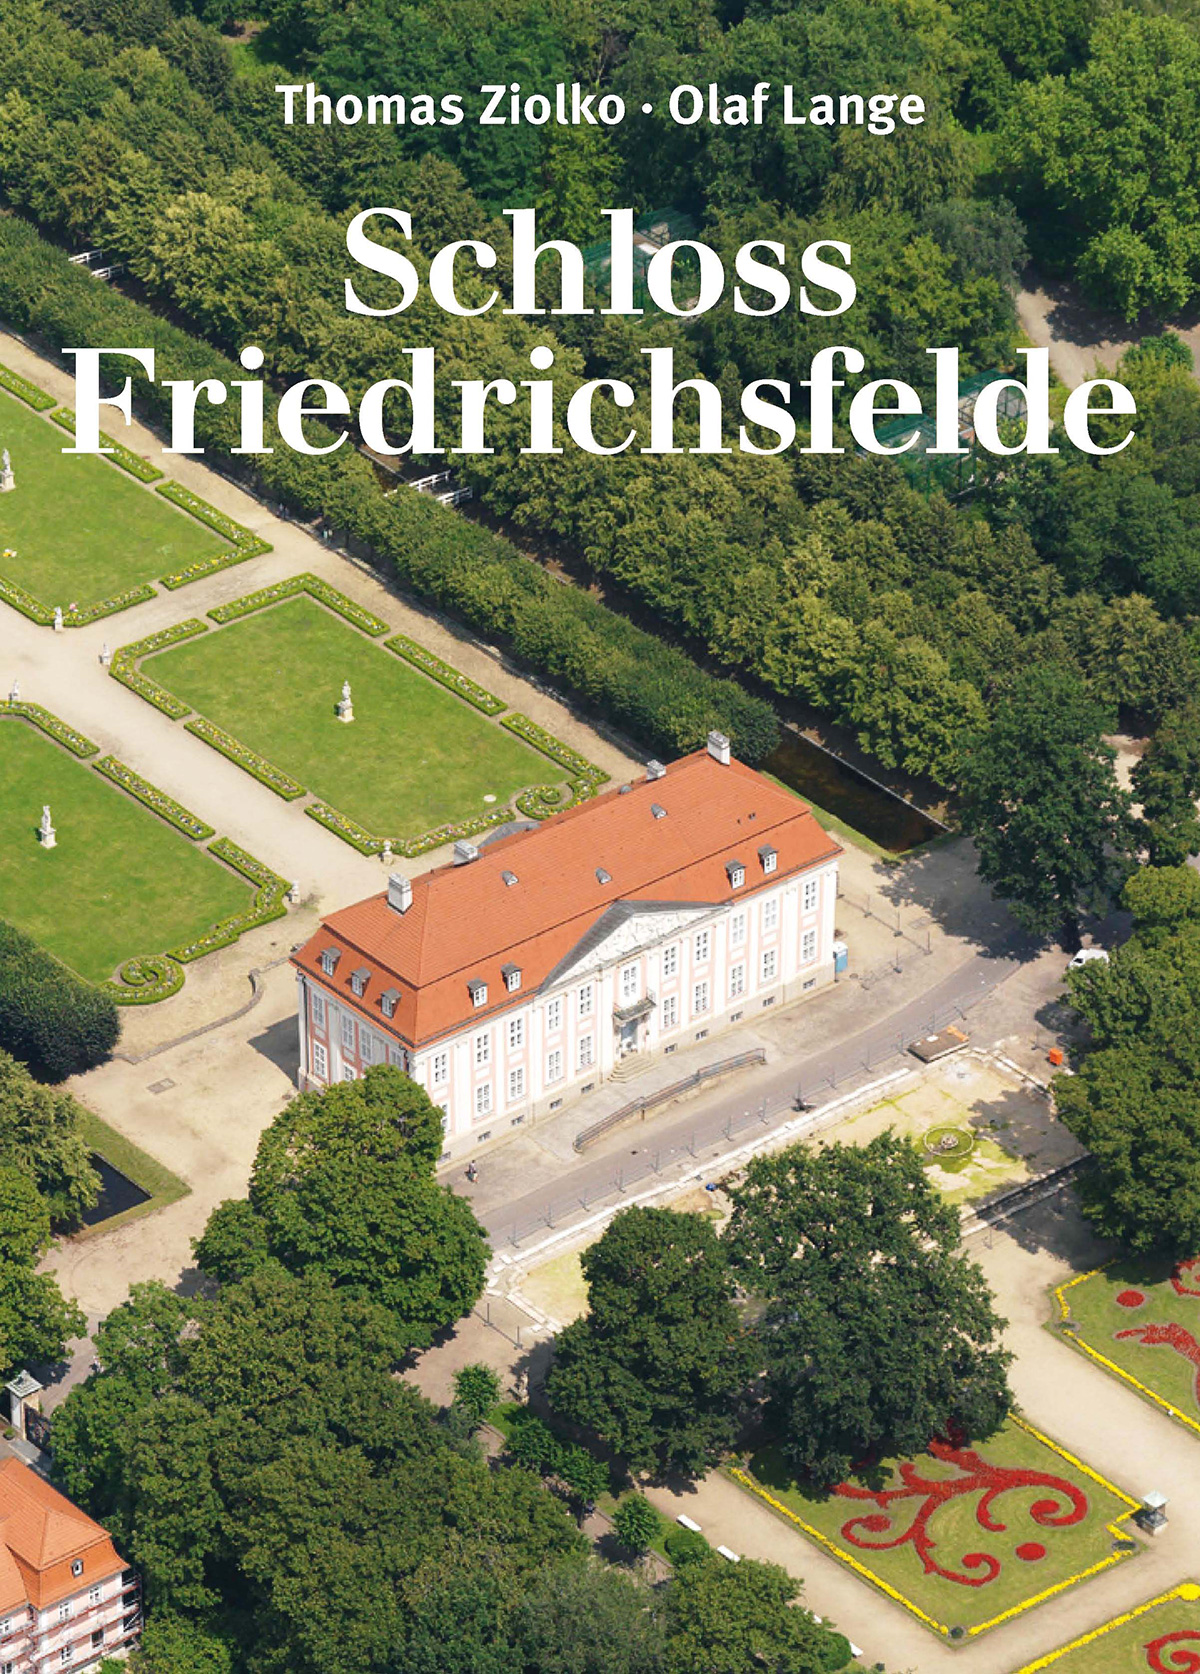 Schloss Friedrichsfelde - Thomas Ziolko und OLaf Lange